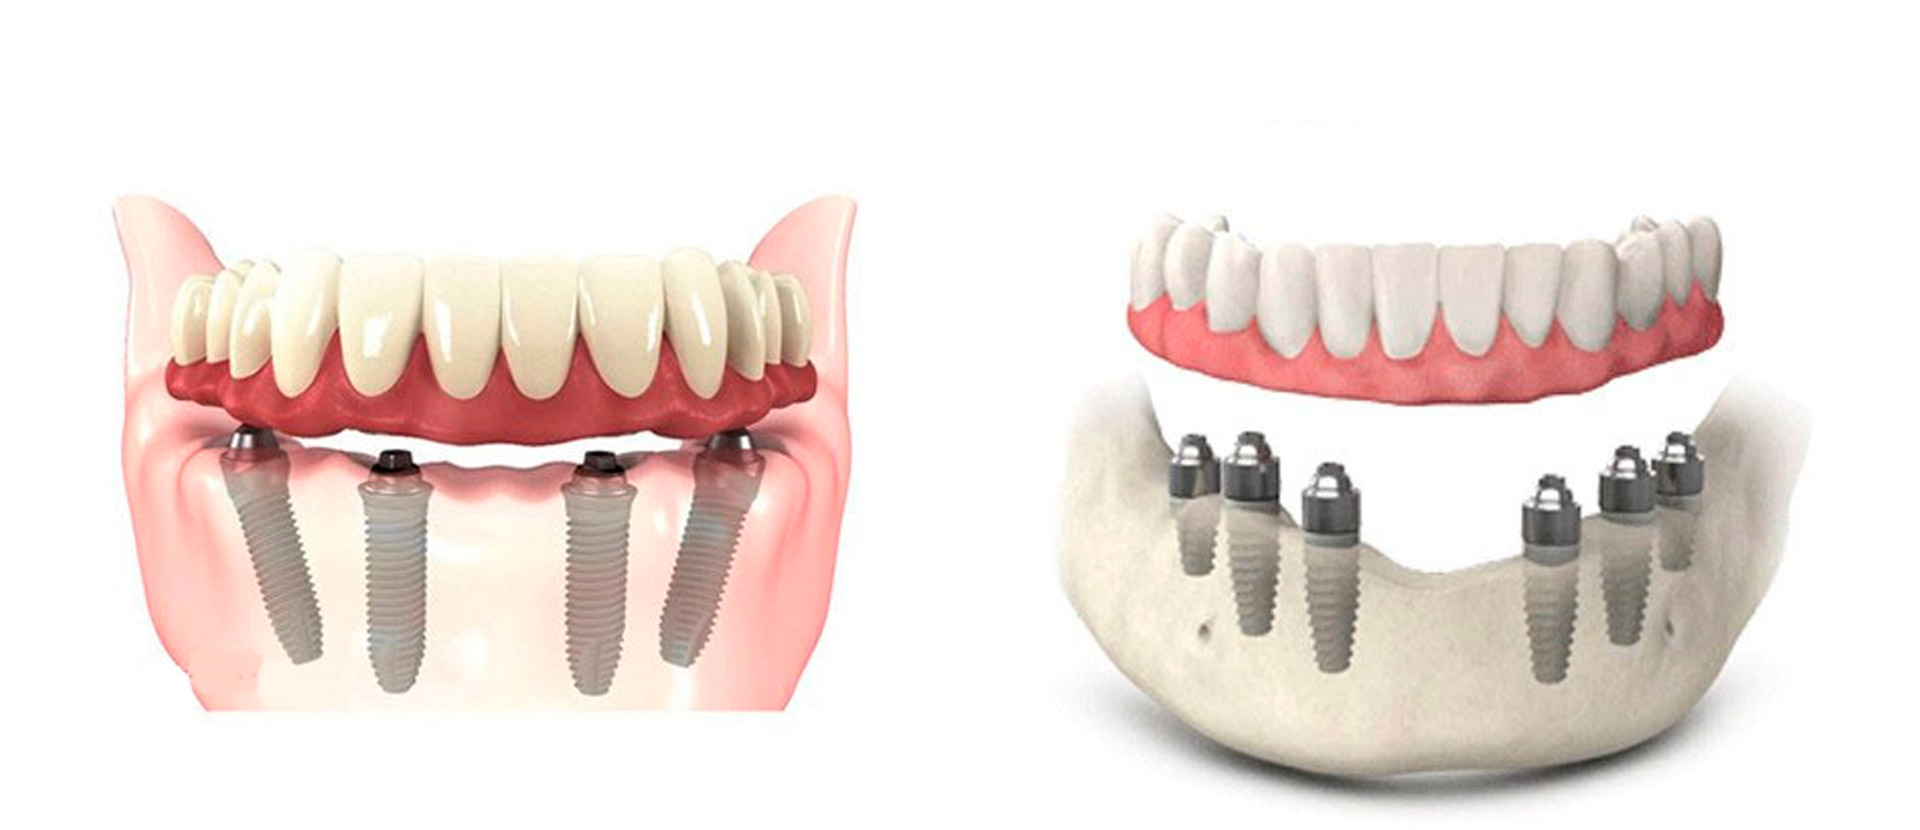 Имплантация зубов all on 6. Имплантация all on 4 челюсть. Имплантация на 4 имплантах нижней челюсти. Протез нижней челюсти на 4 имплантах.